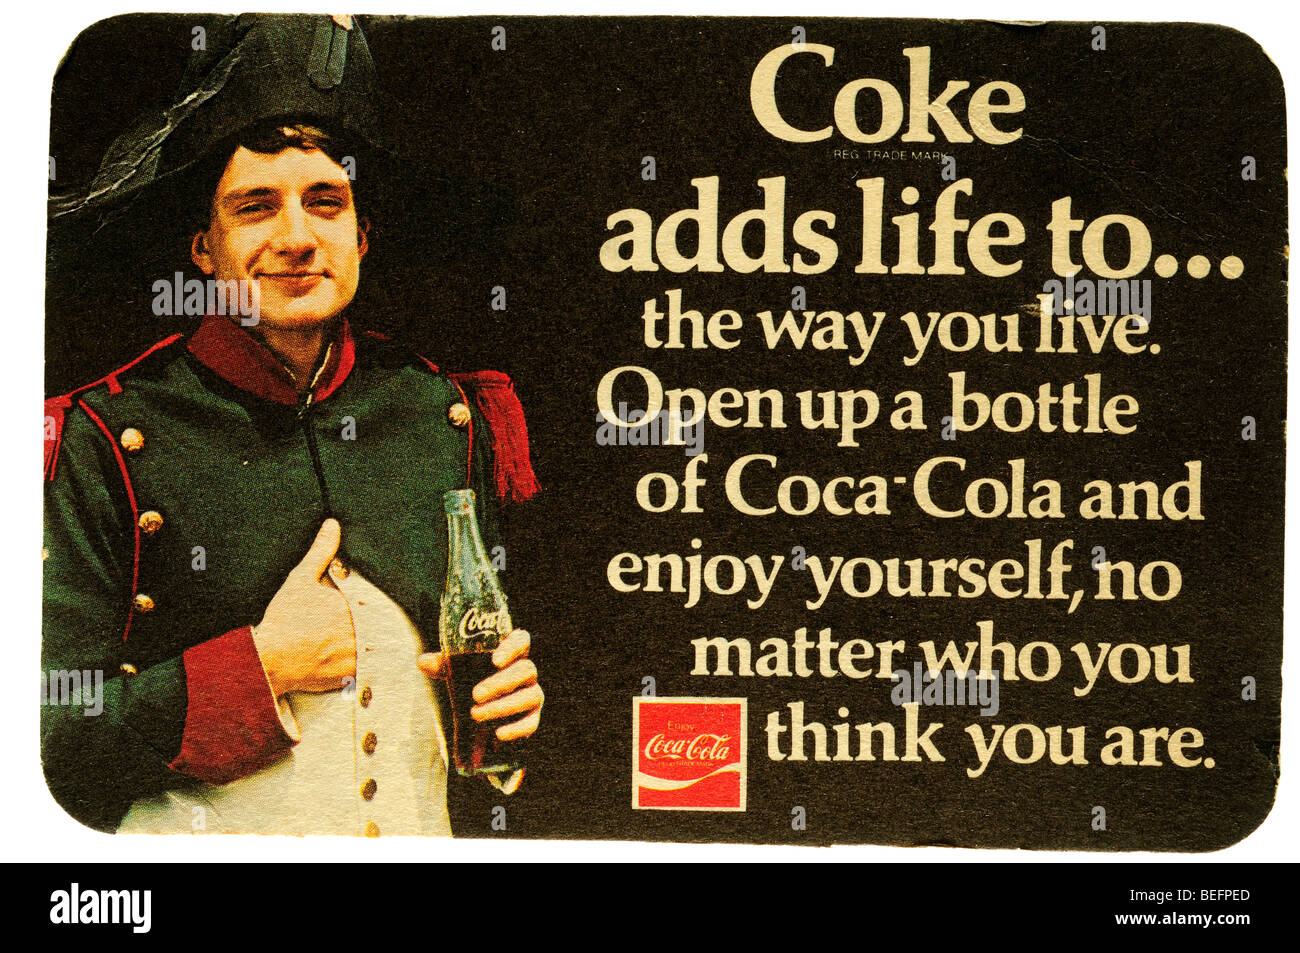 Koks fügt Leben, wie Sie eine Flasche Coca cola offen zu leben und genießen, egal, wer Sie denken, Sie sind Stockfoto